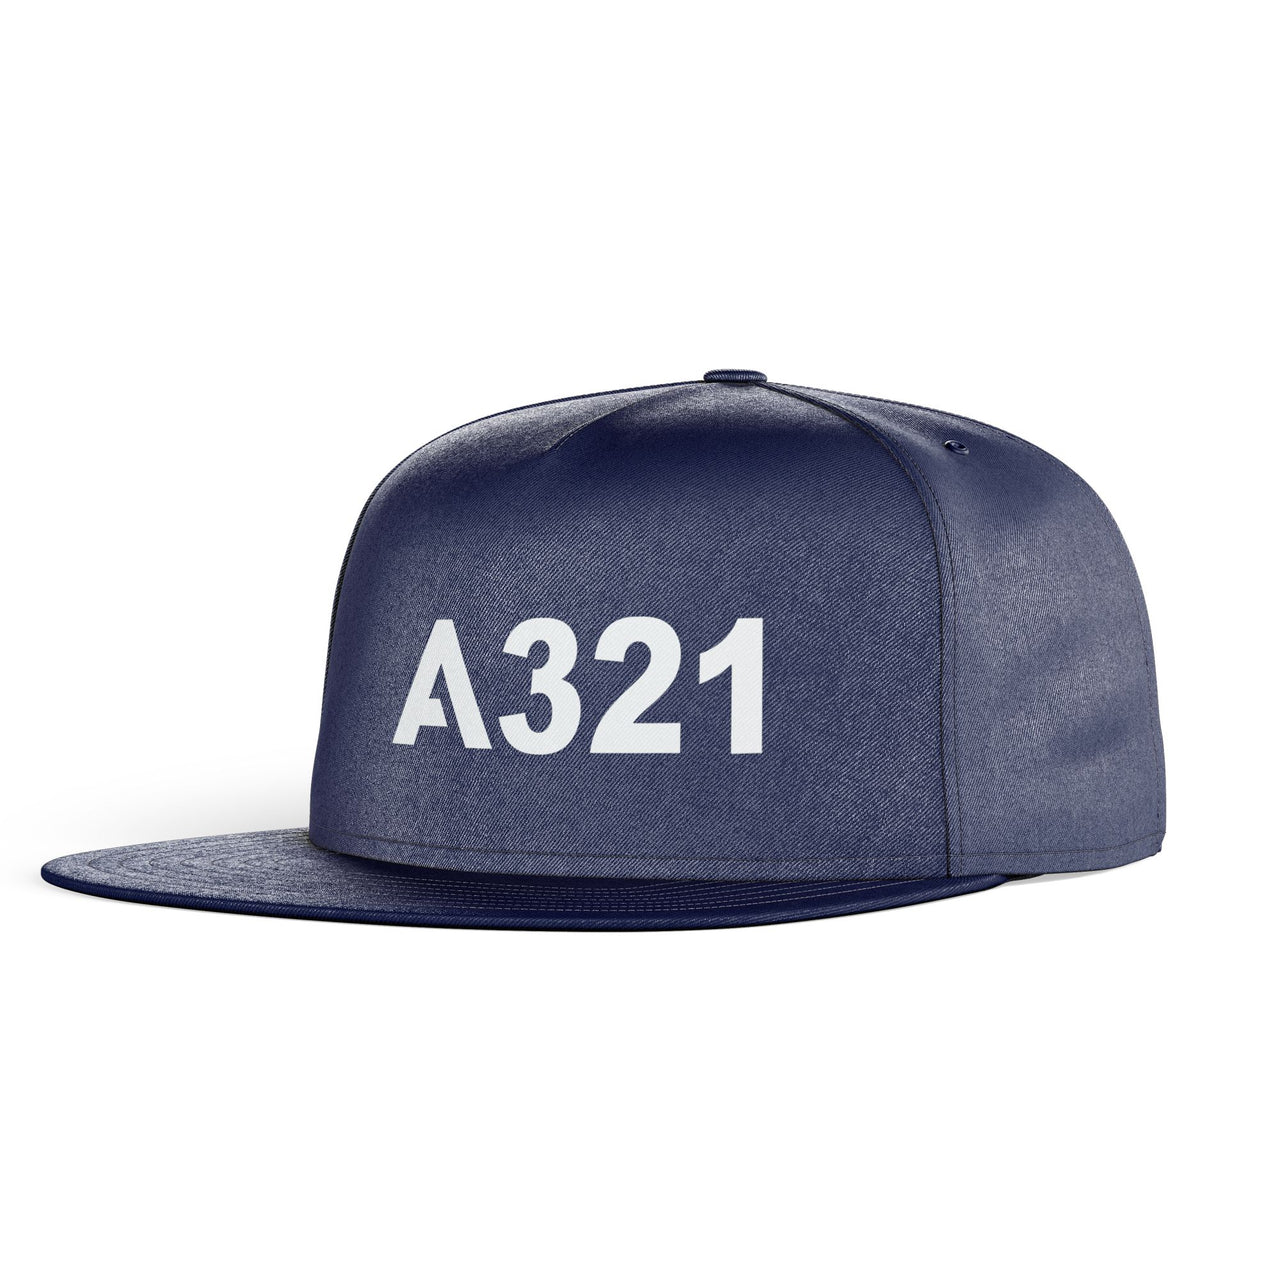 A321 Flat Text Designed Snapback Caps & Hats